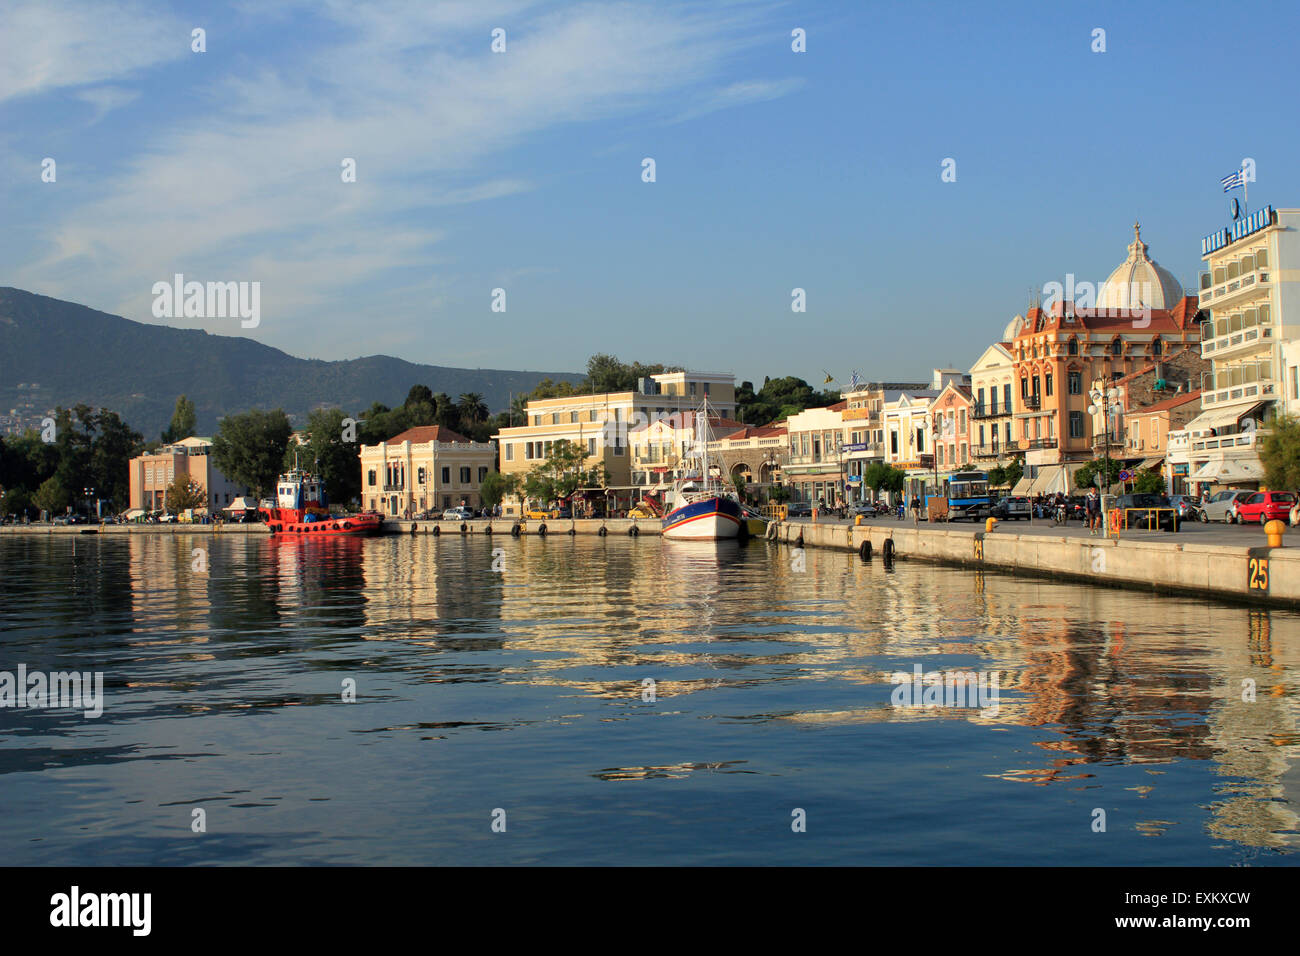 La capital de Lesbos o Lesvos island, Mitilene y pintoresco puerto reflejado sobre la superficie del mar. Foto de stock